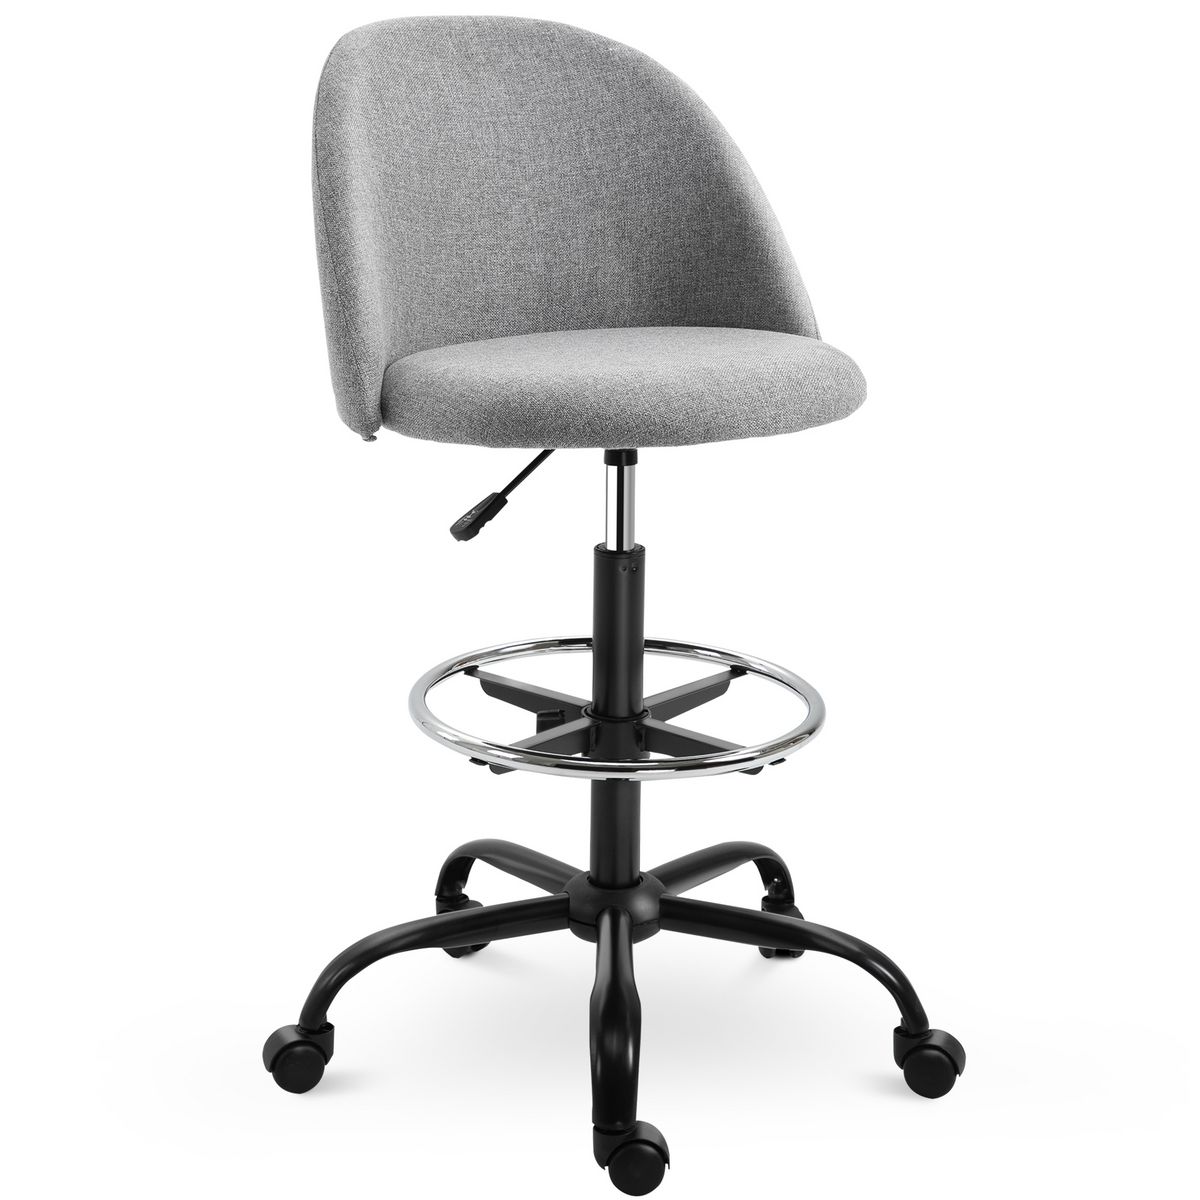 VINSETTO Vinsetto Chaise de bureau assise haute réglable 103-123H cm pivotant 360° lin gris